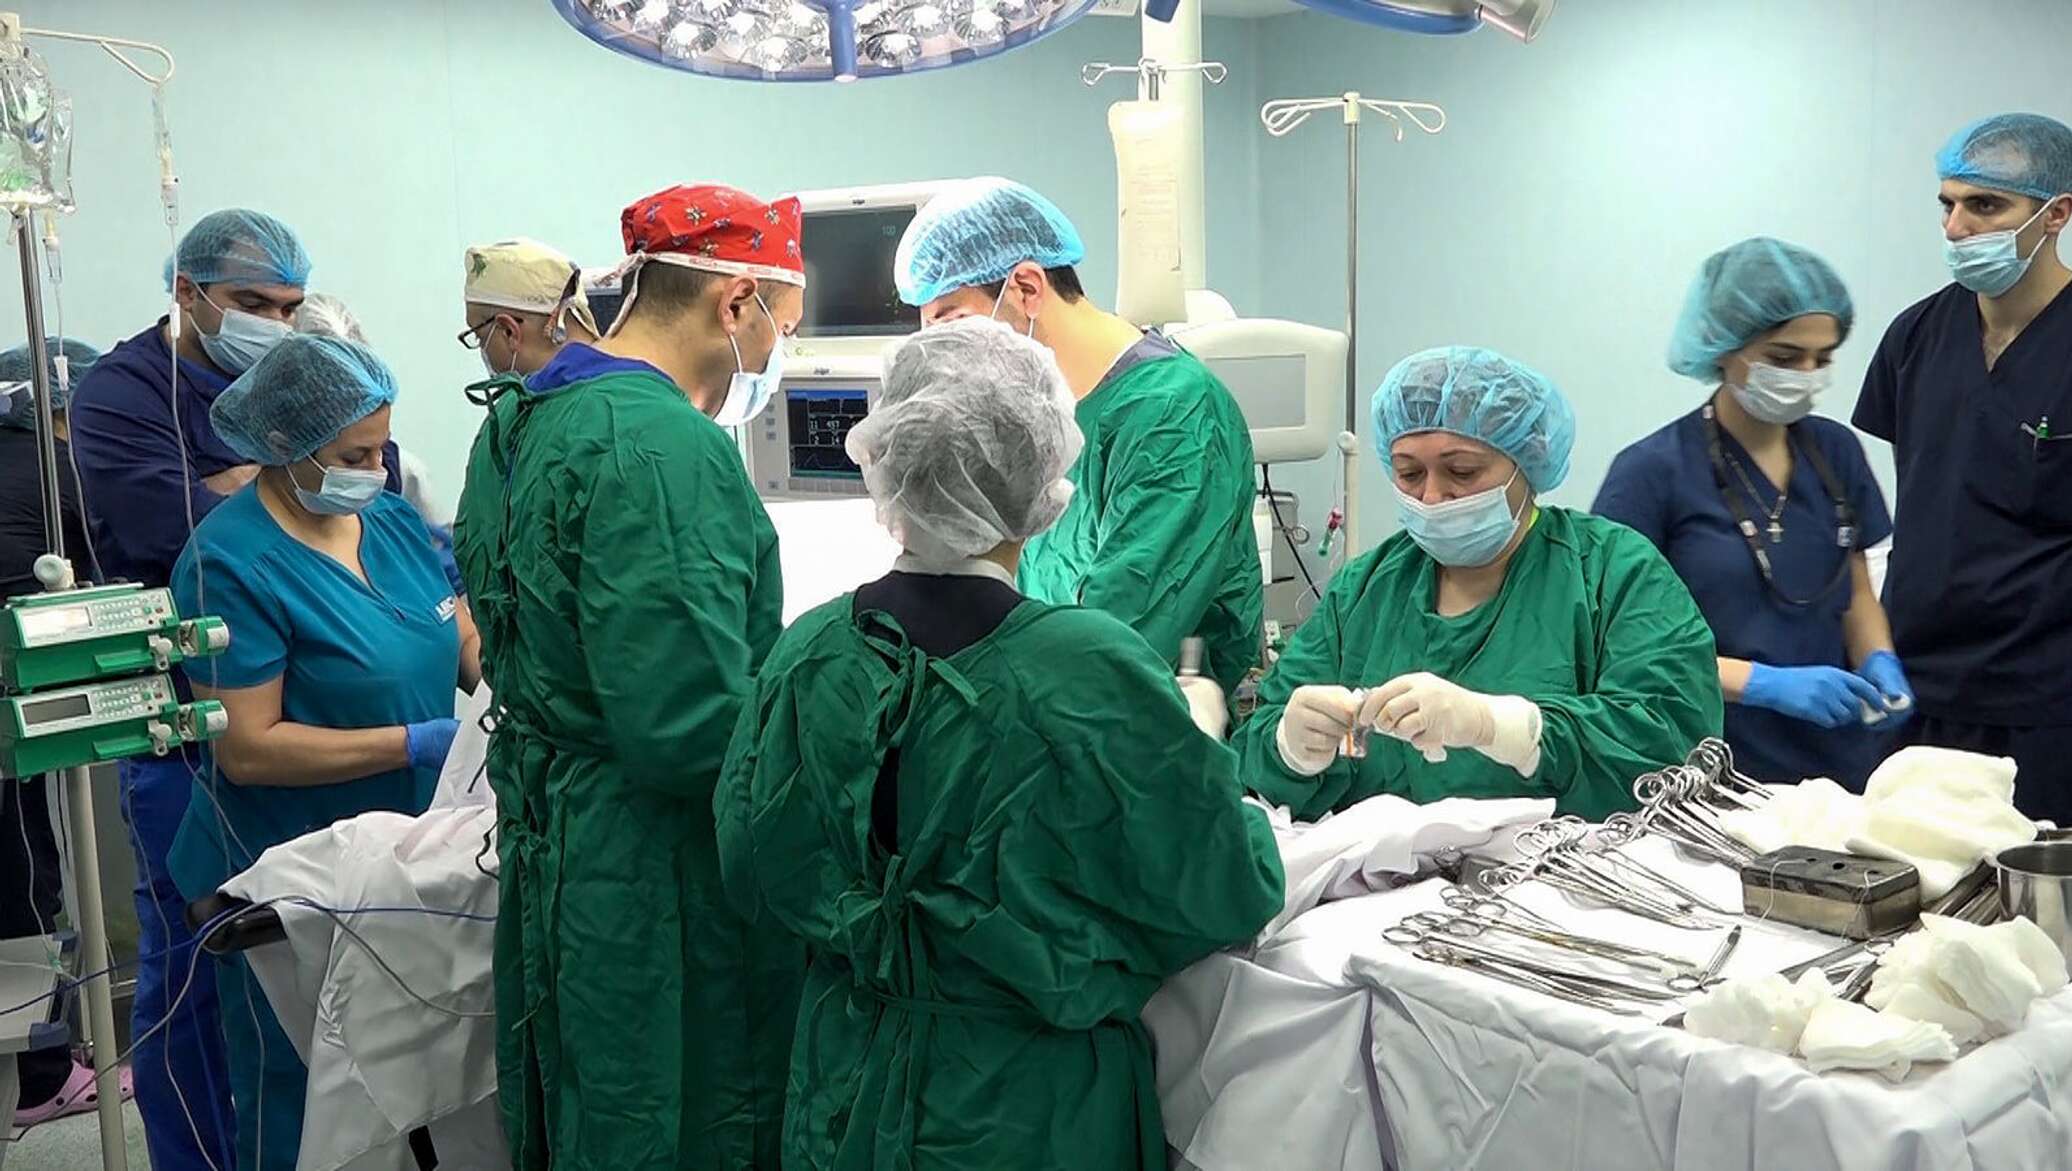 Ереван астхик. Медицинский центр в Армении Астхик. Трансплантация печени.